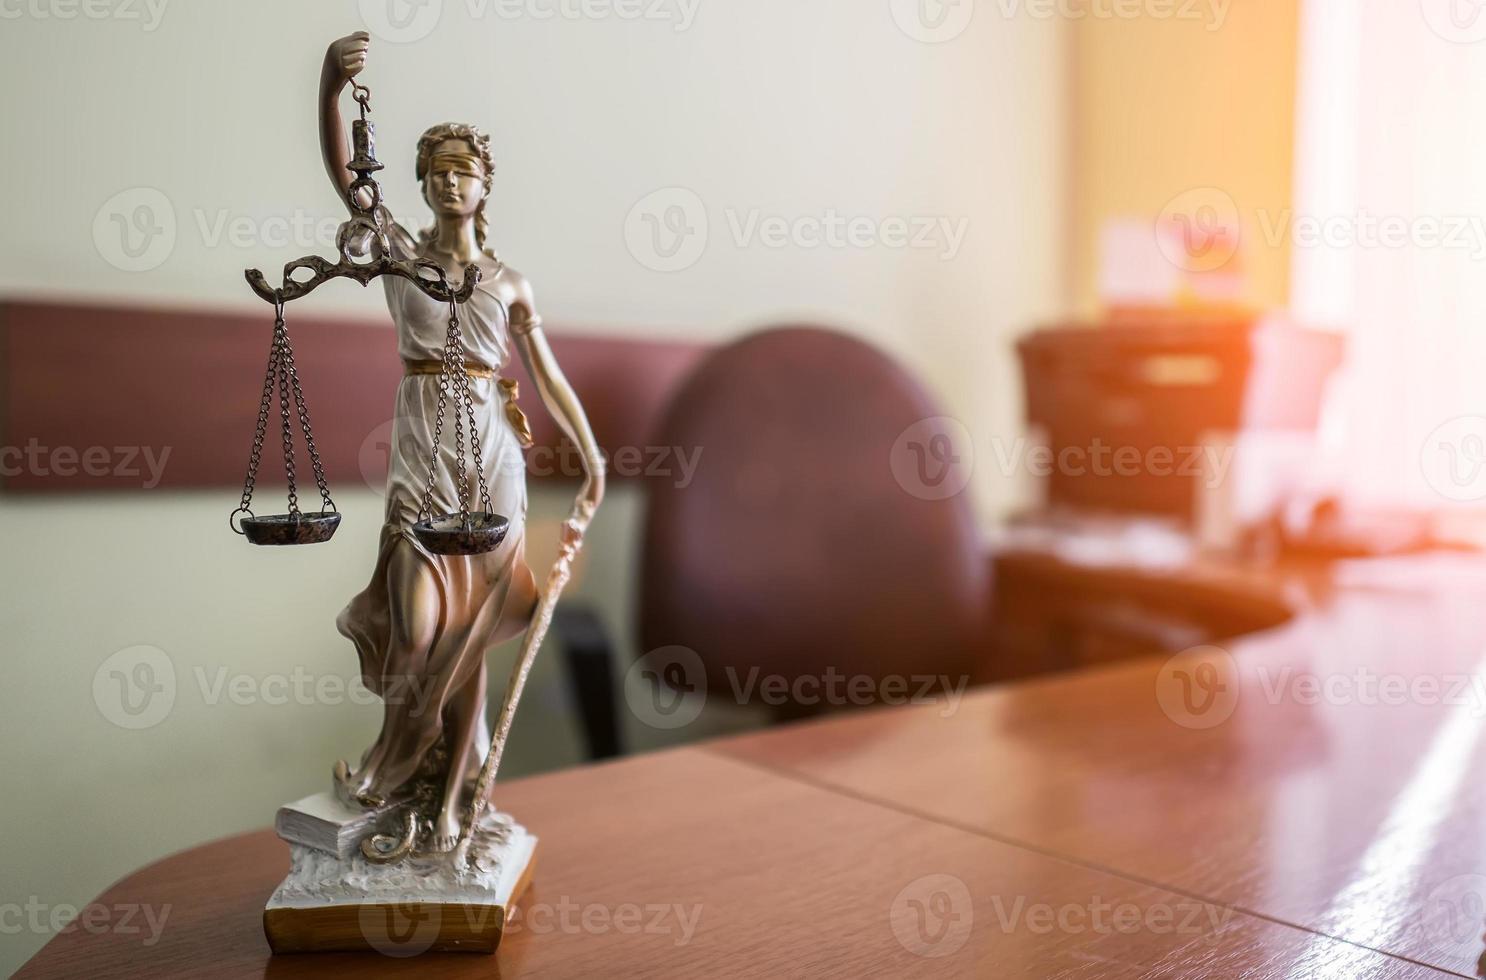 konzept von recht und gerechtigkeit. Hammer des Richters, Bücher, Waage der Gerechtigkeit. Thema Gerichtssaal. foto